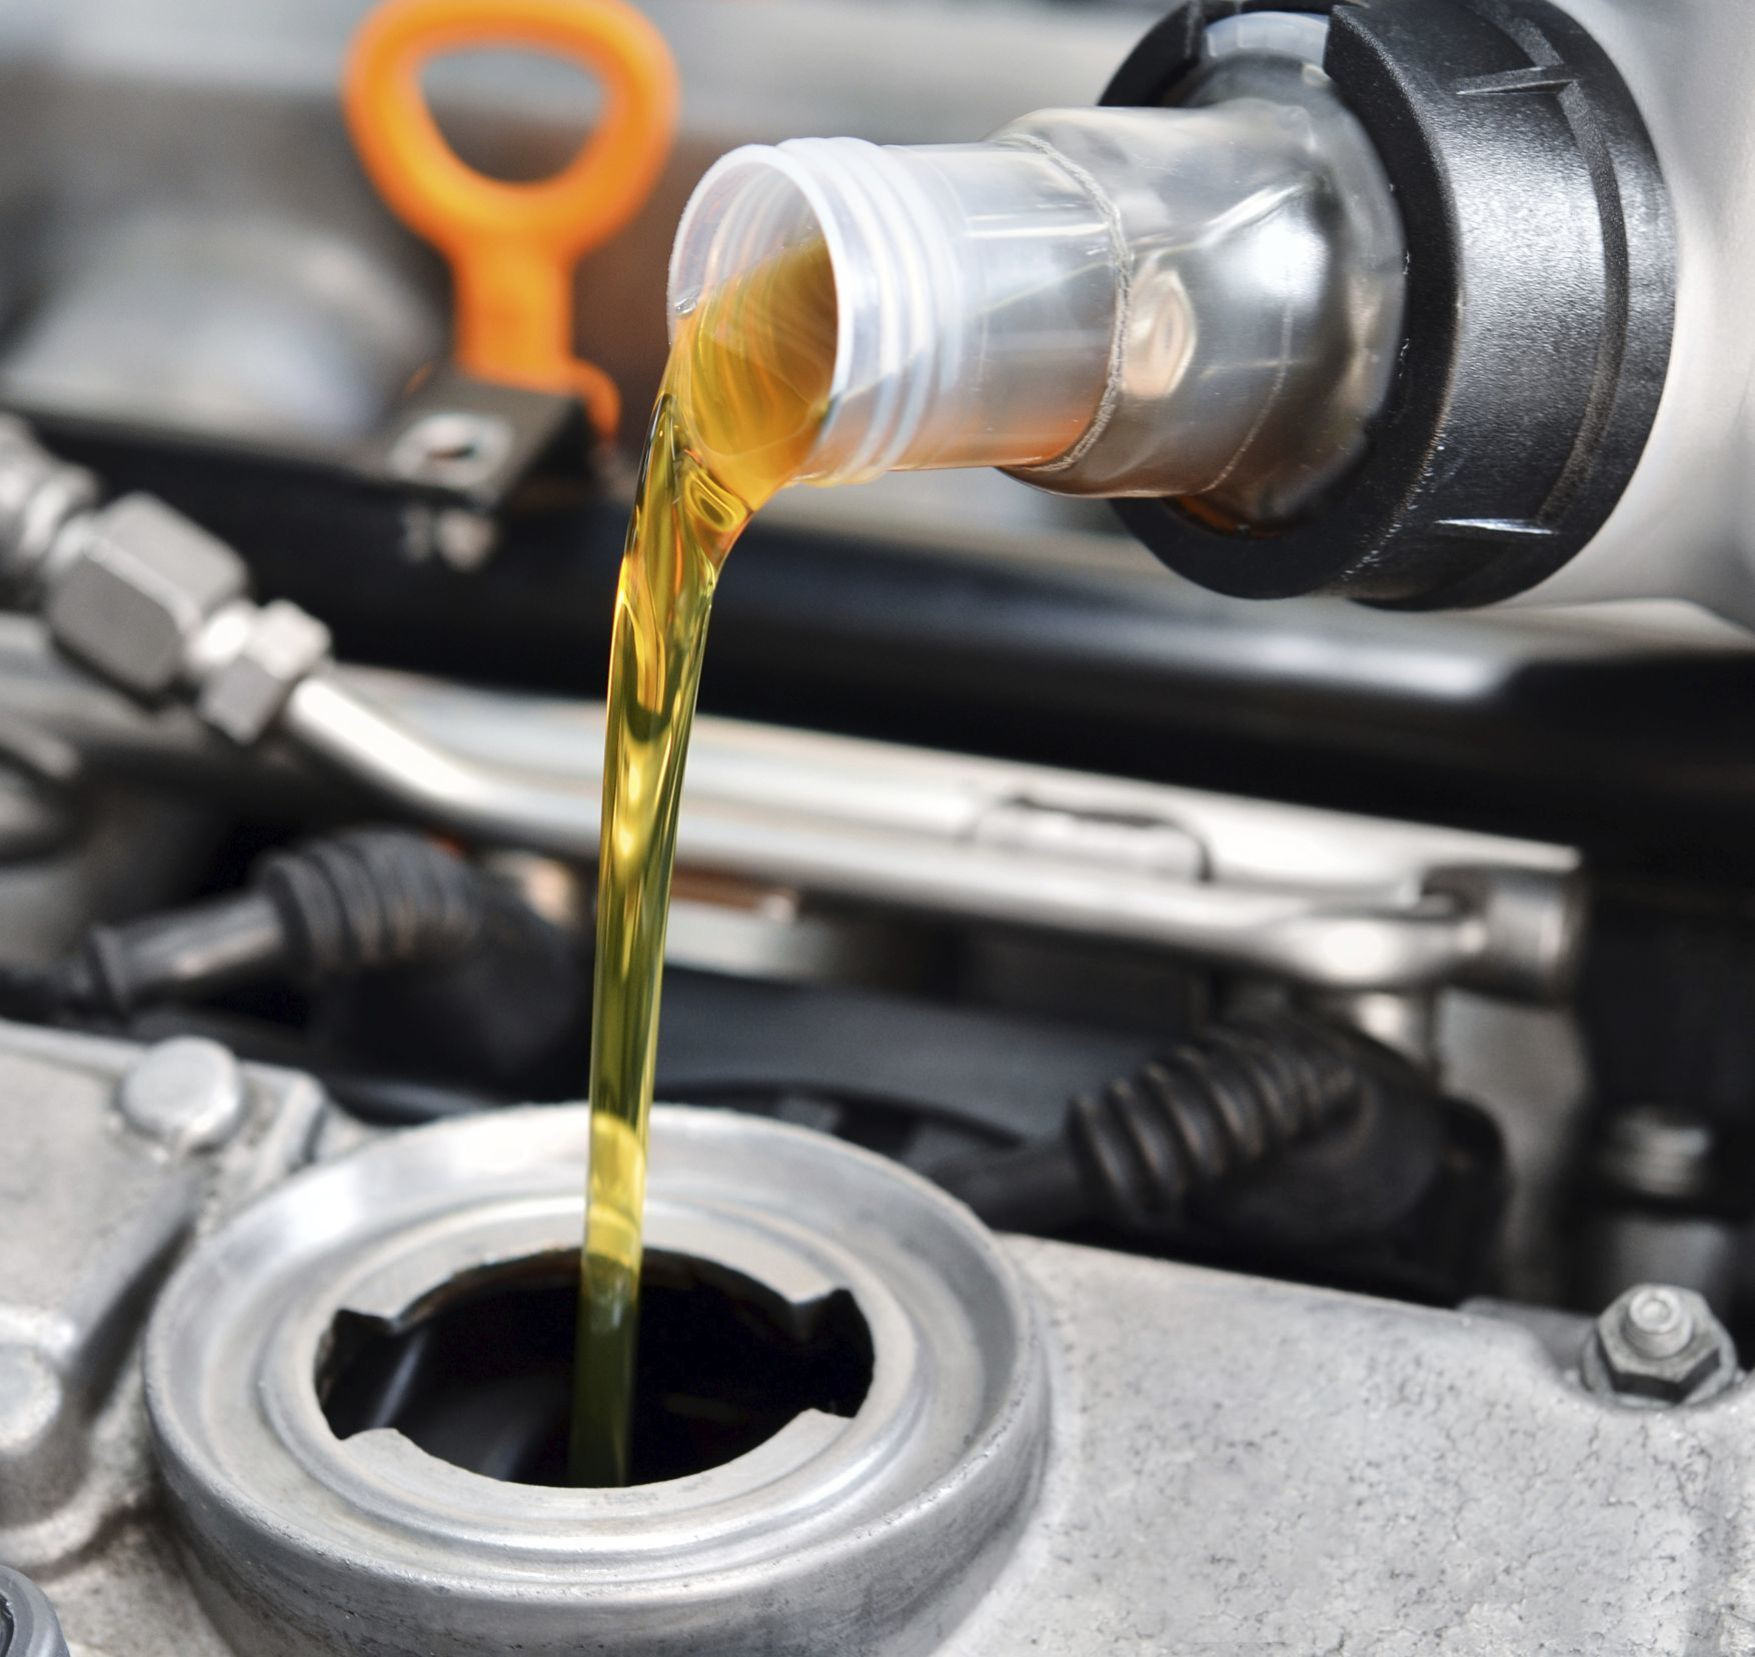 Как заменить моторное масло